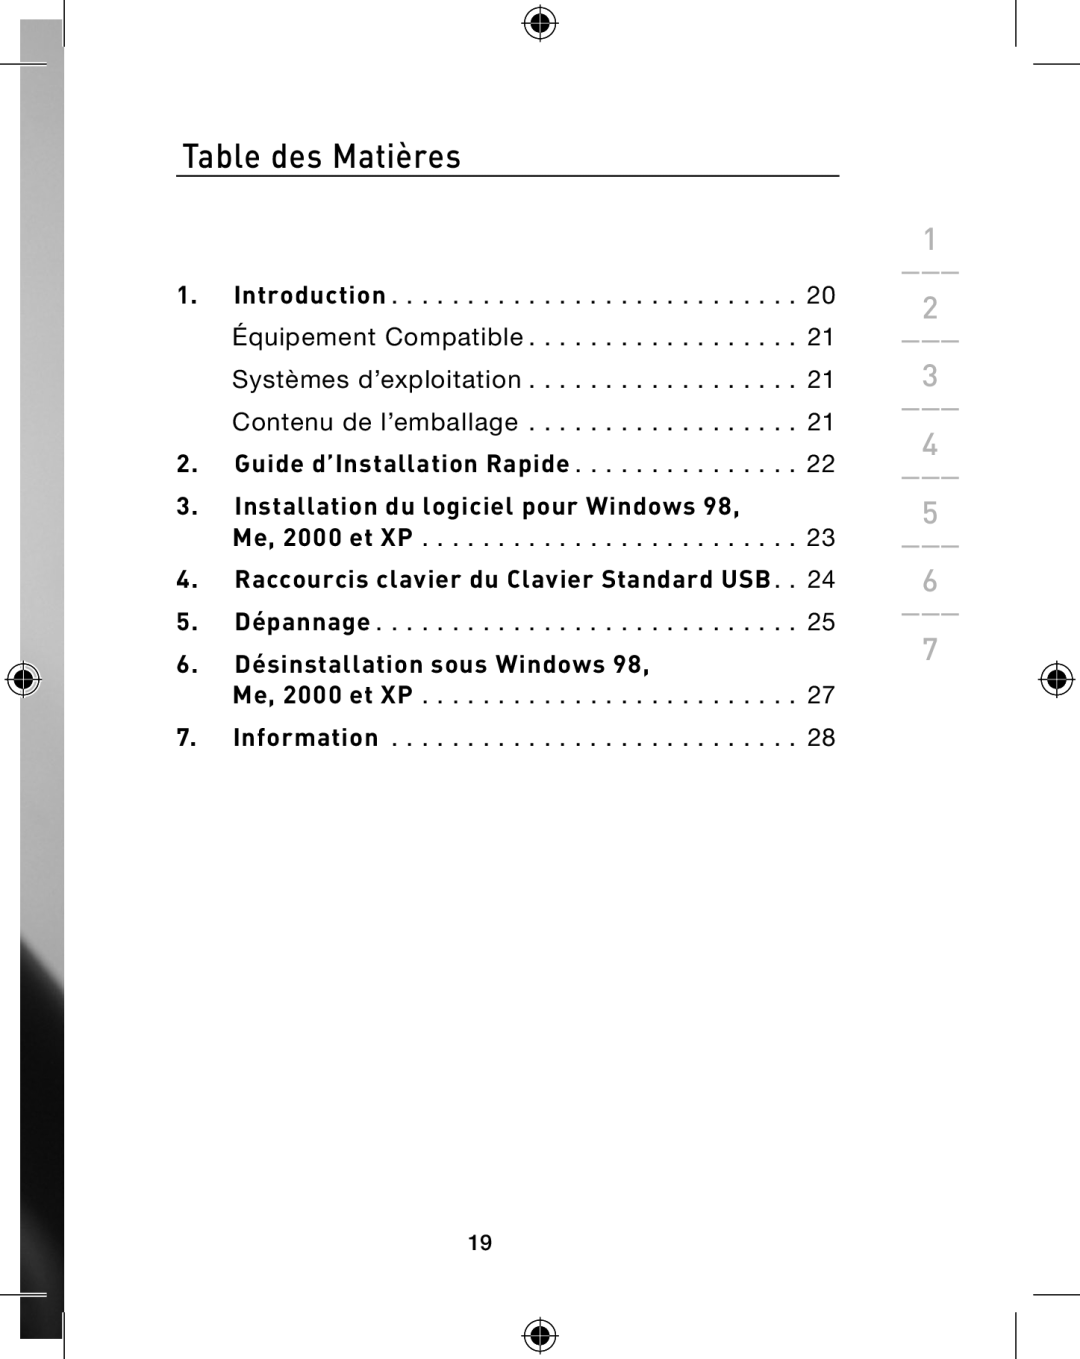 Belkin P74775 Table des Matières, Installation du logiciel pour Windows, 6. Désinstallation sous Windows, Me, 2000 et XP 